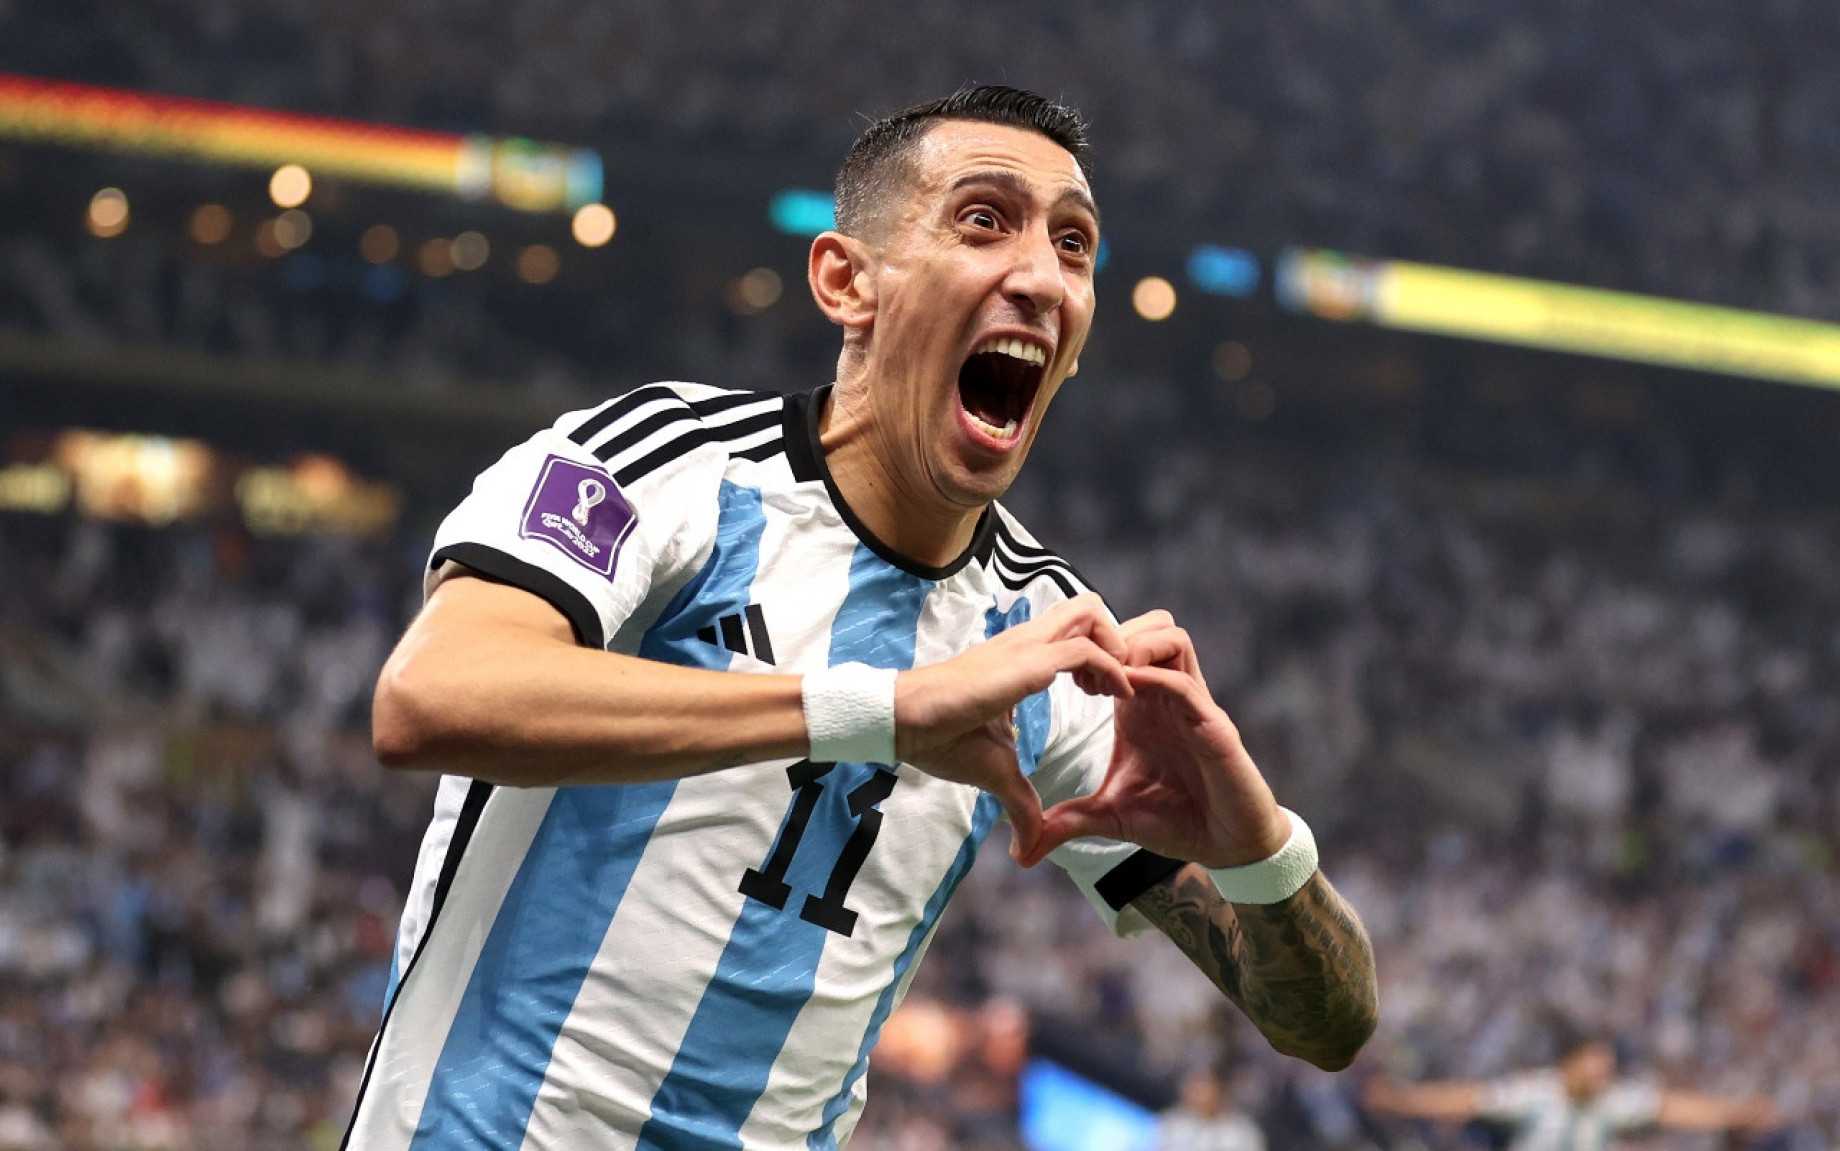 Accadde oggi, 18 dicembre 2022: l'Argentina è campione del mondo